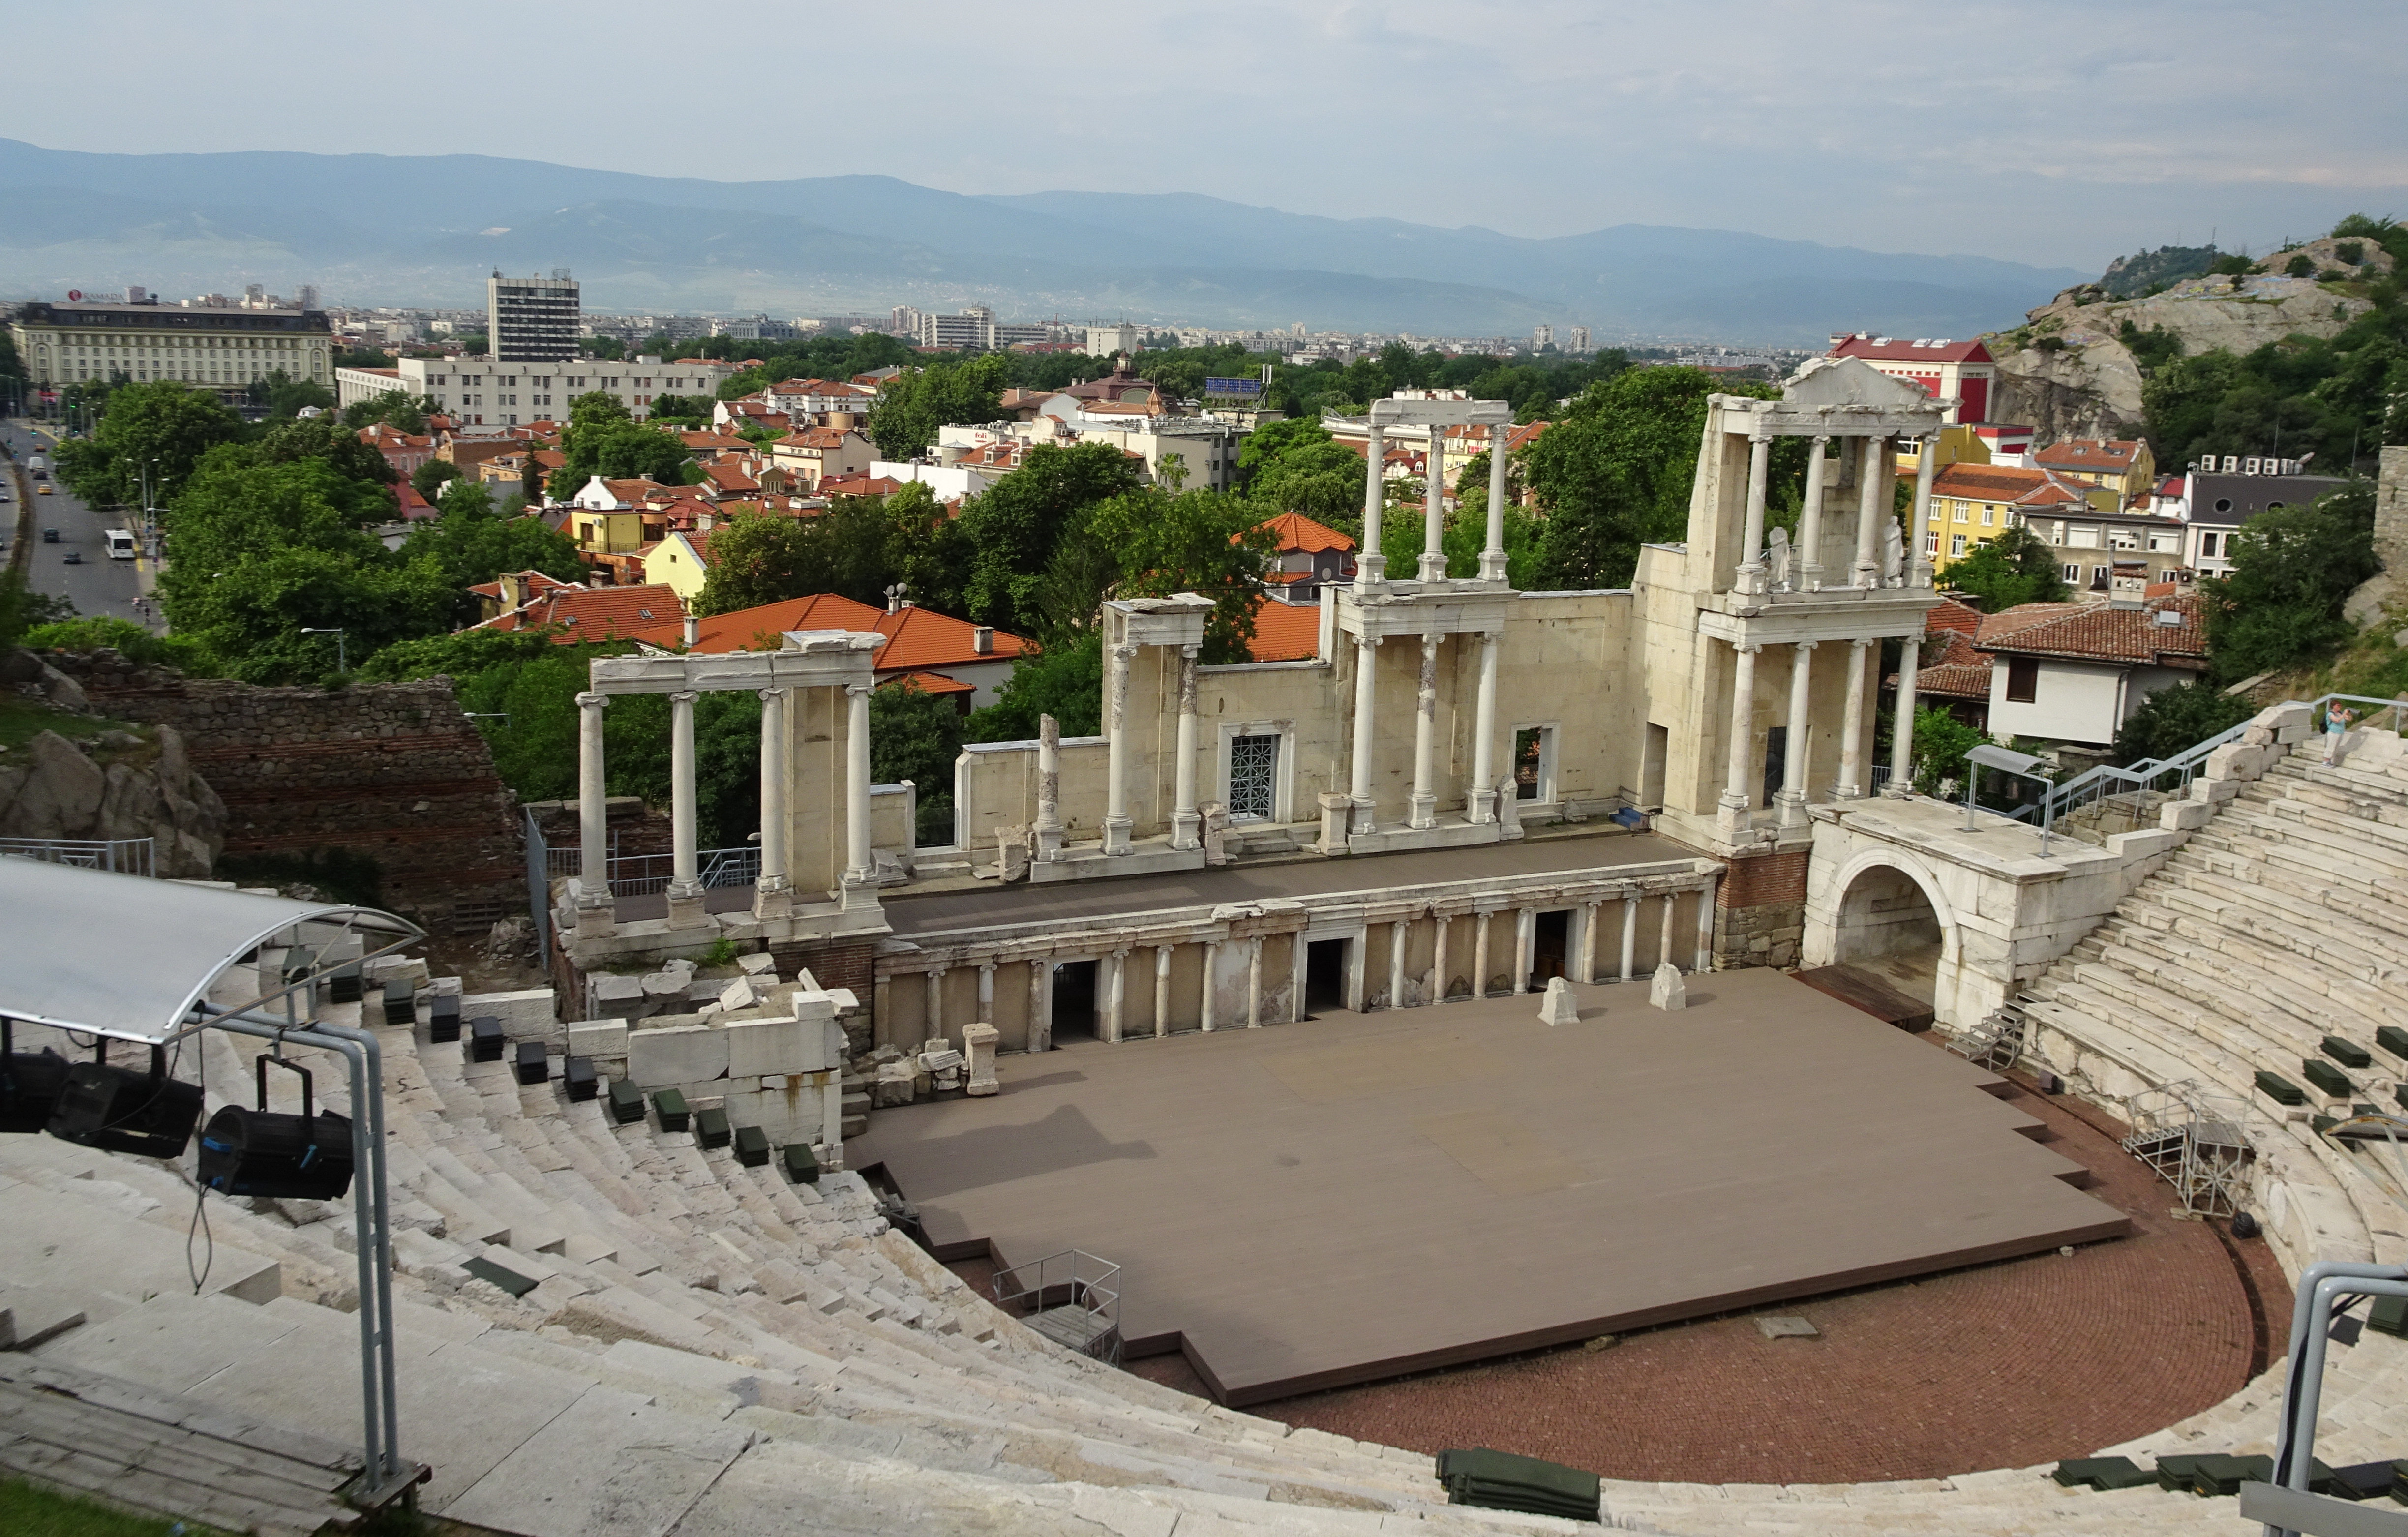 Plovdivローマ劇場